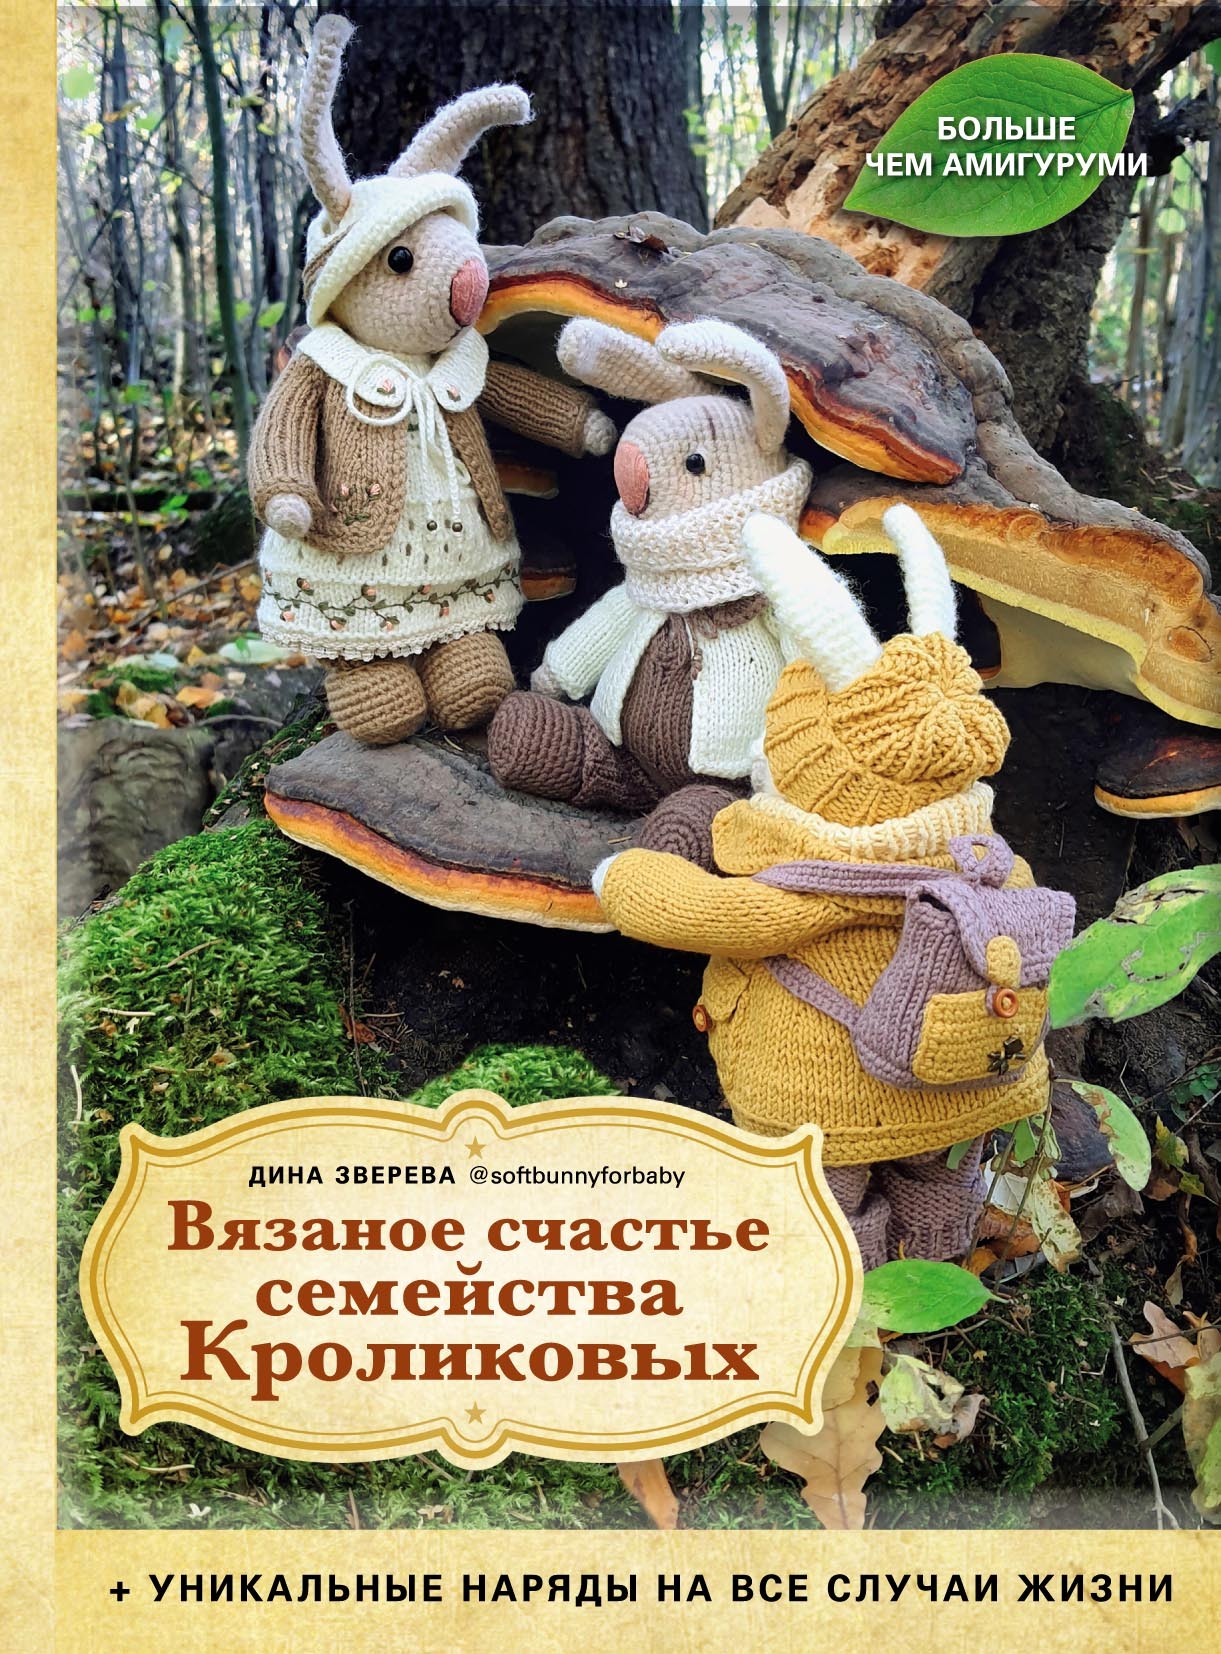 Костюмчики Кроликов для фотосессии новорожденных с доставкой по России и миру.